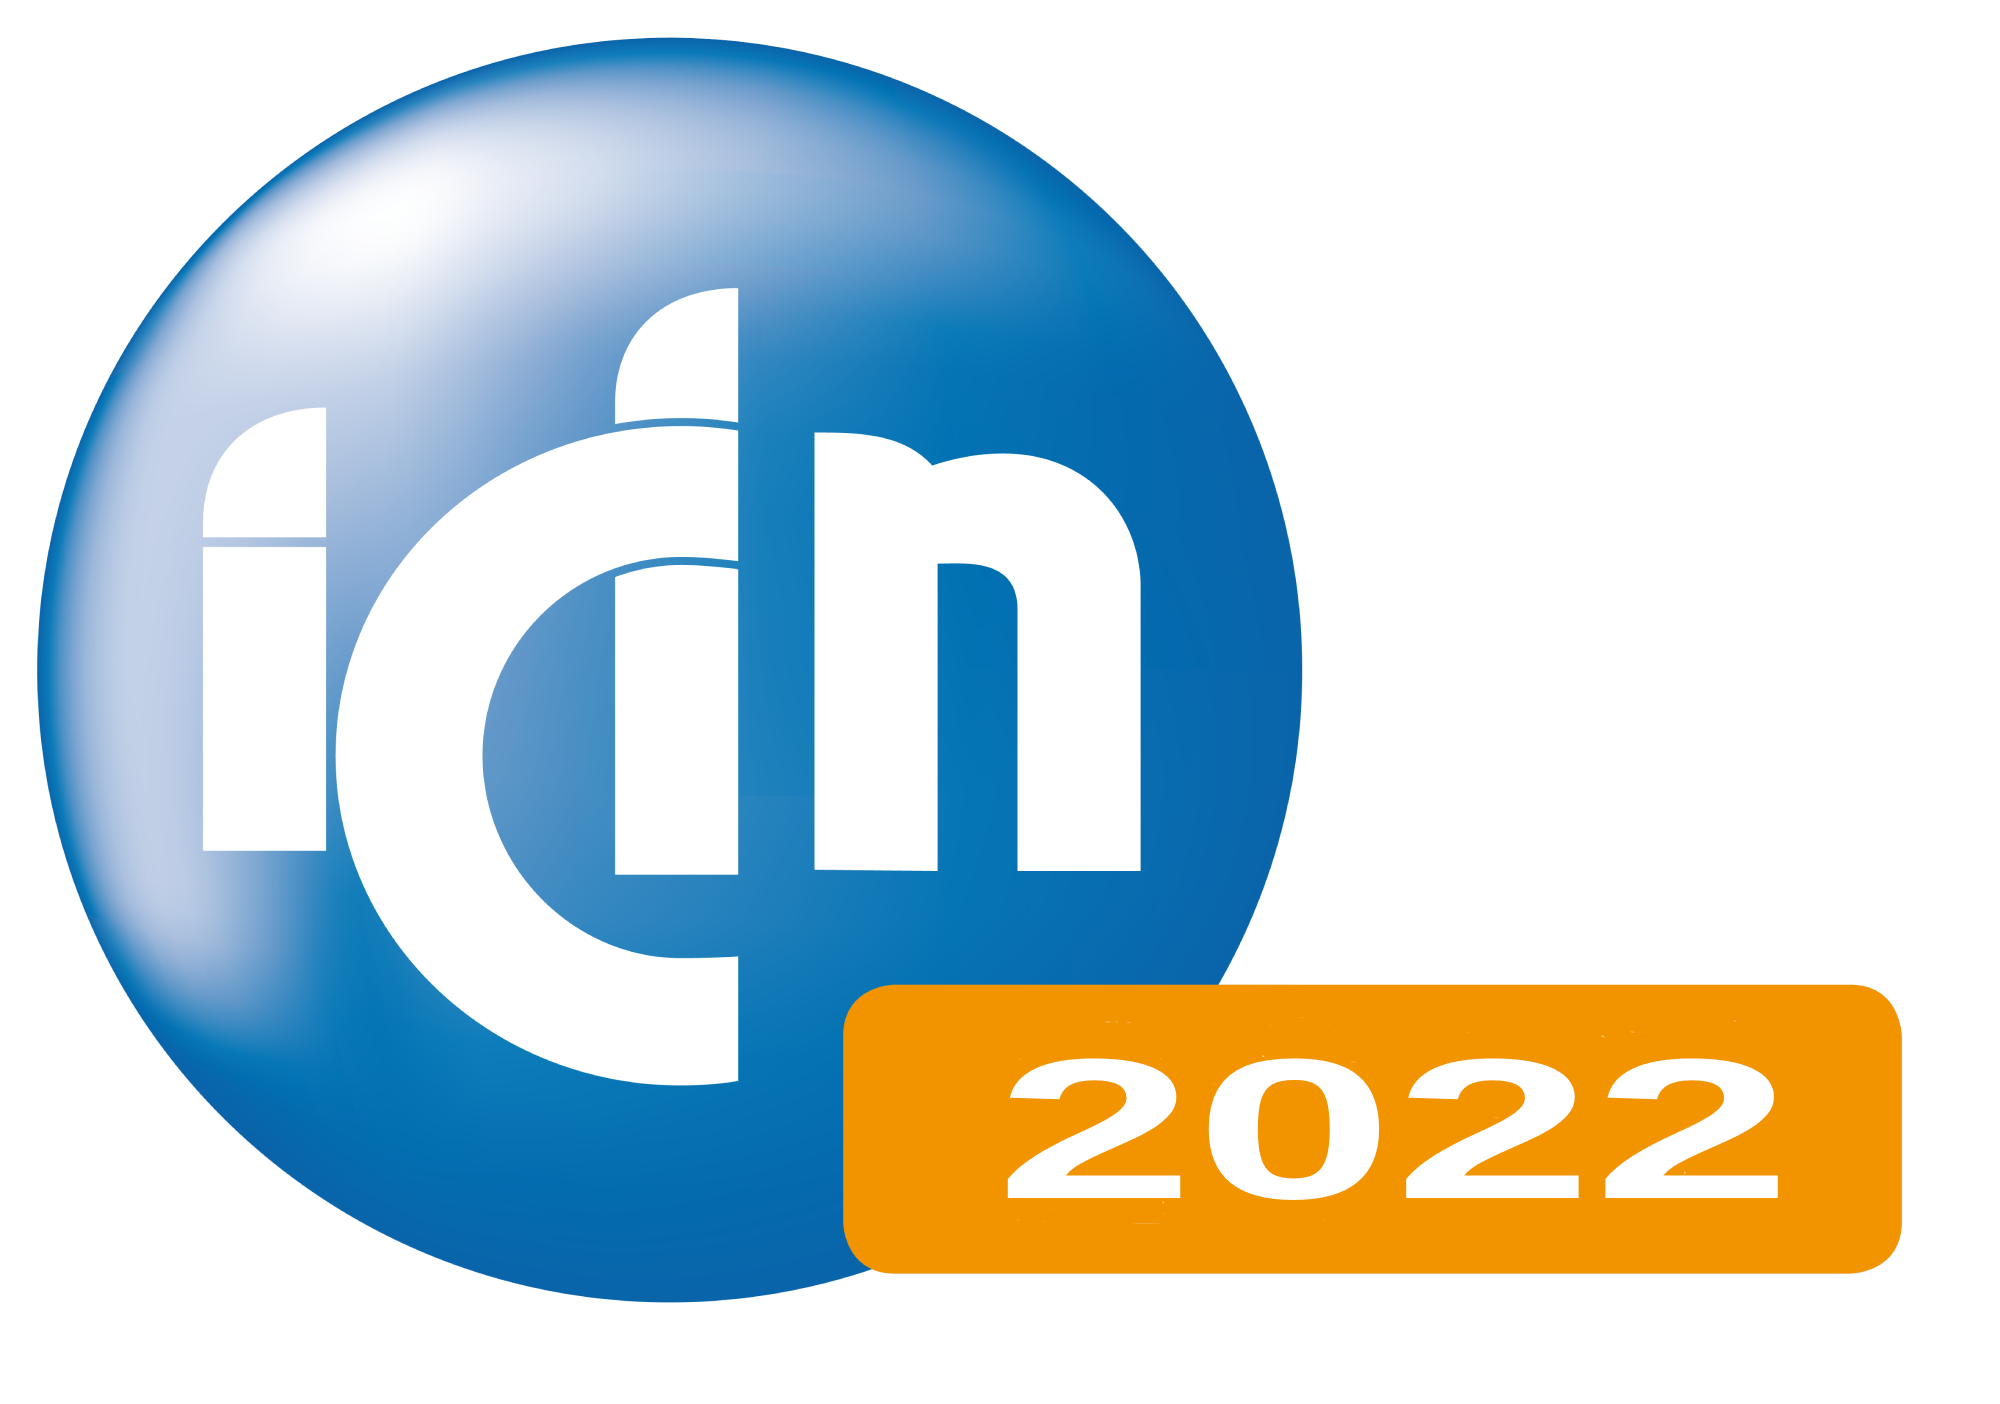 ICIN 2022